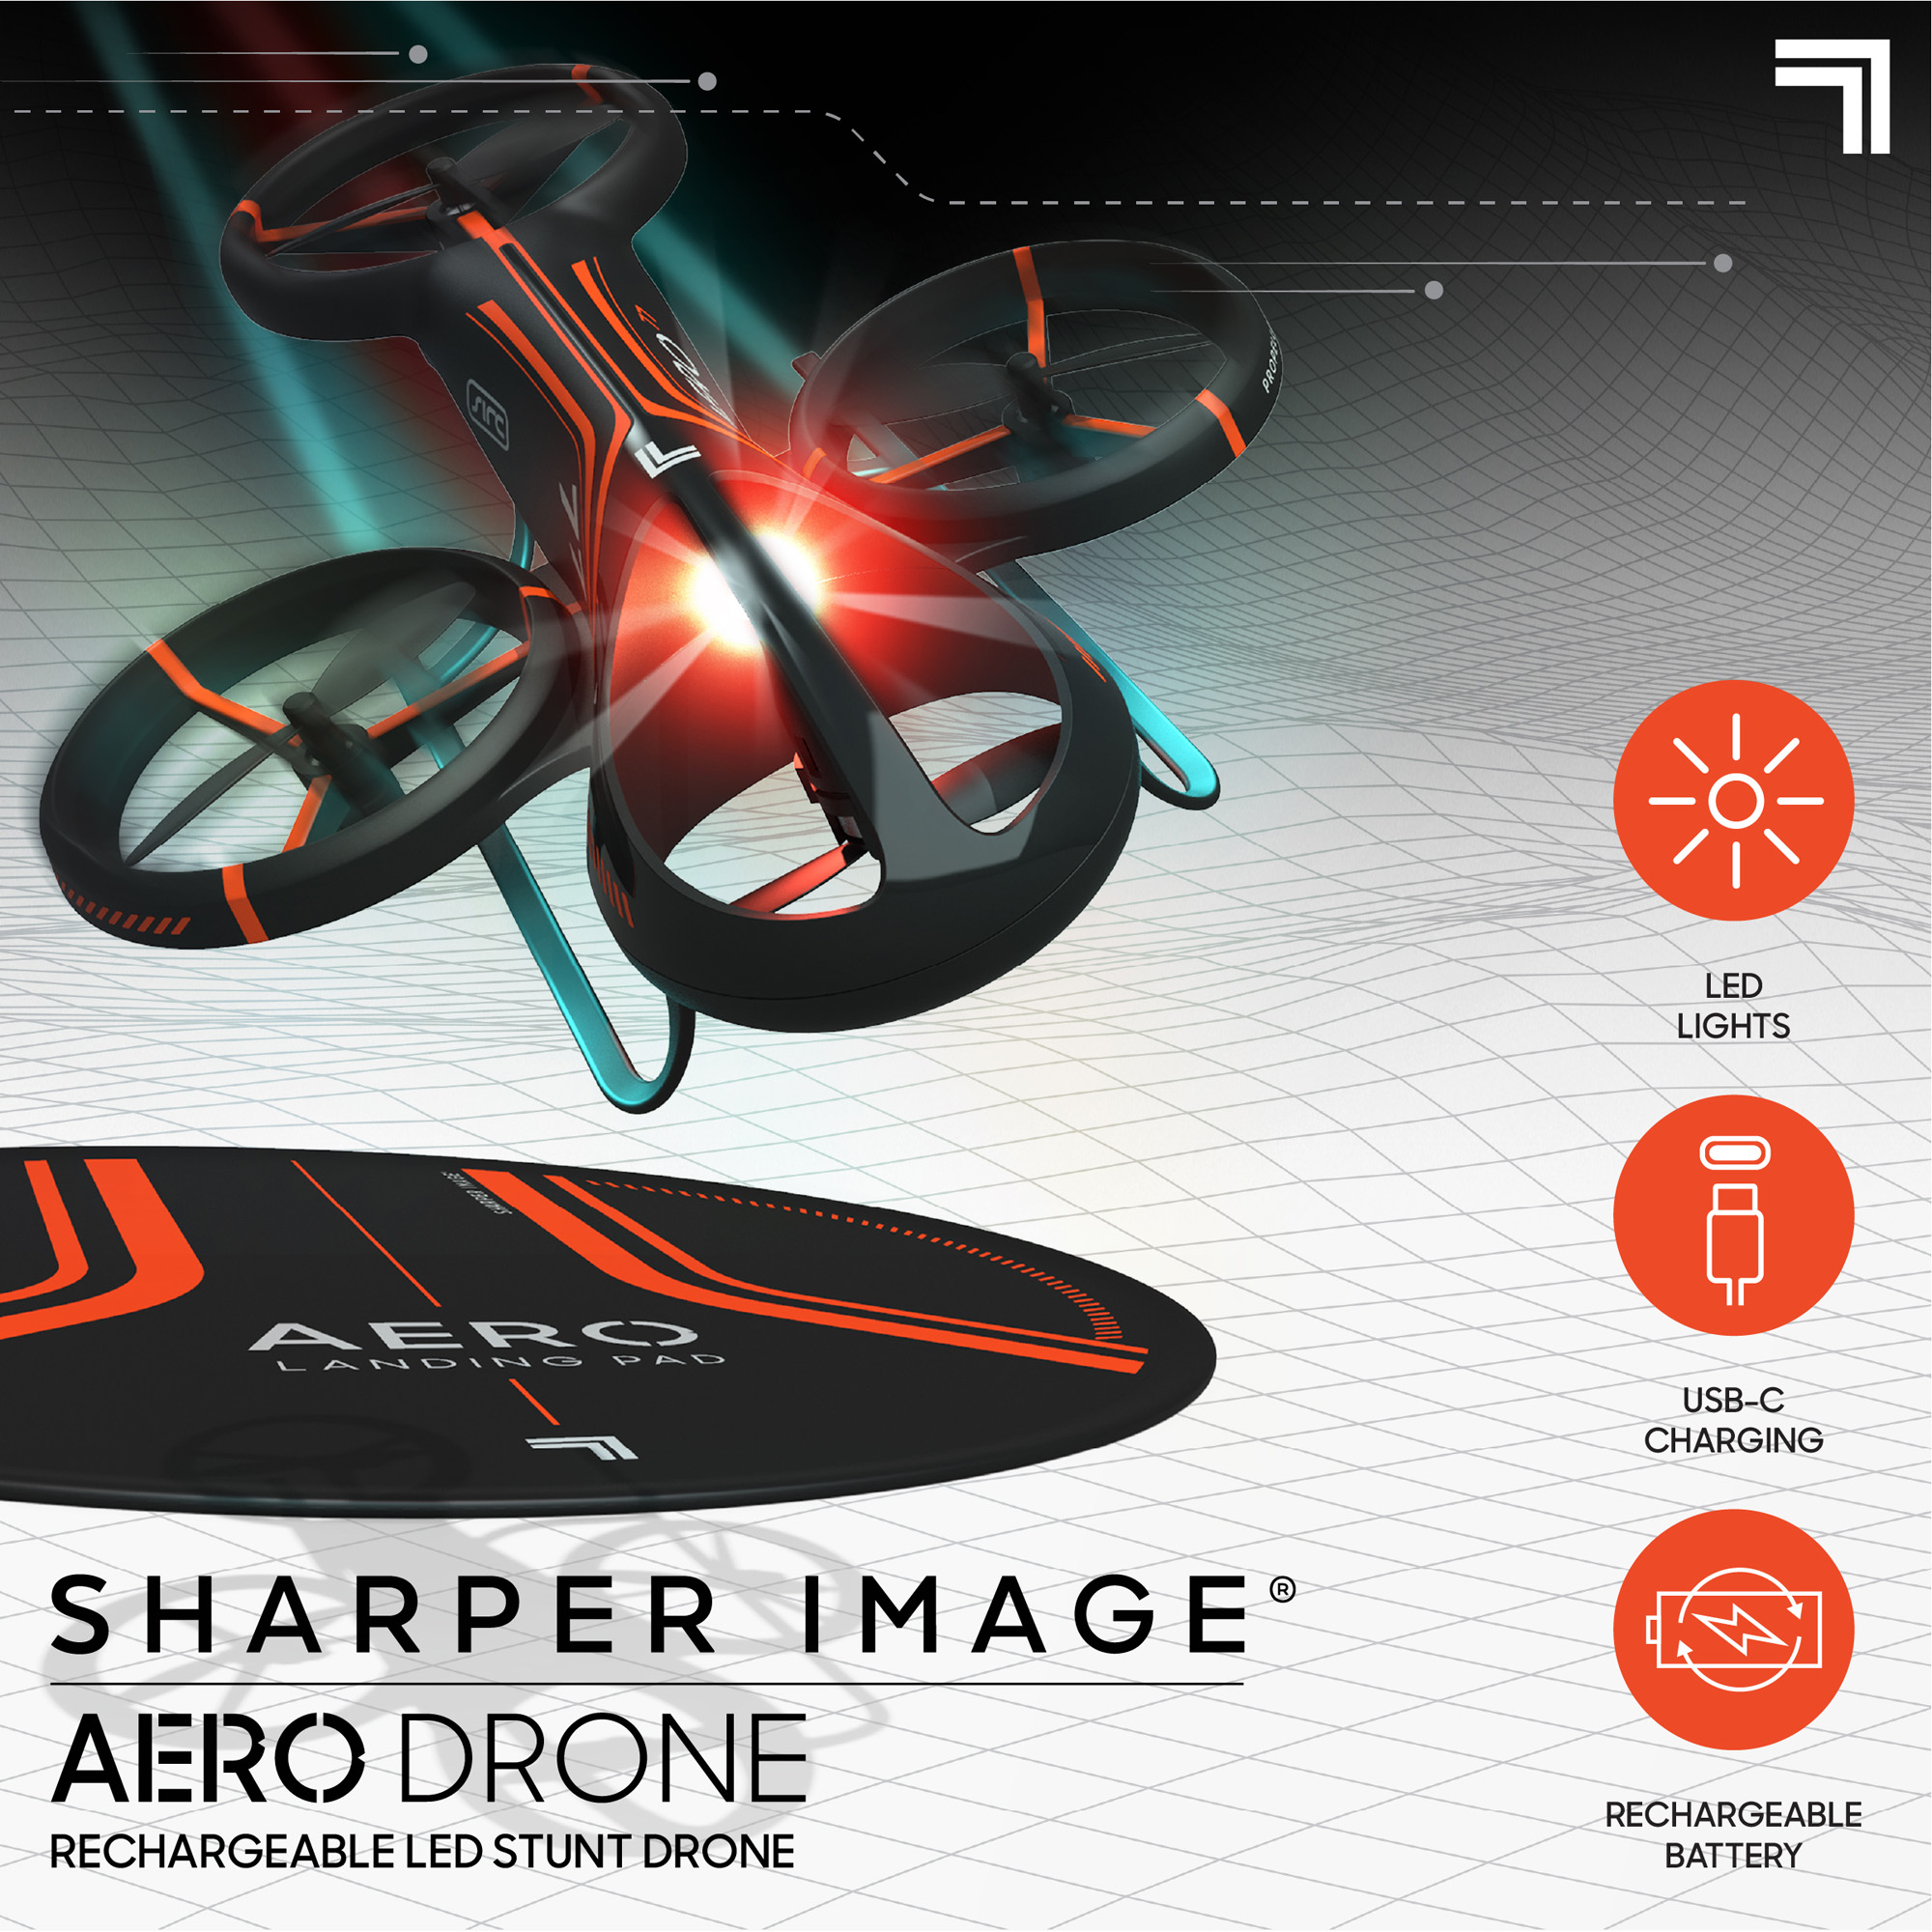 Sharper image - quadricottero radiocomandato aero drone - Sharper Image